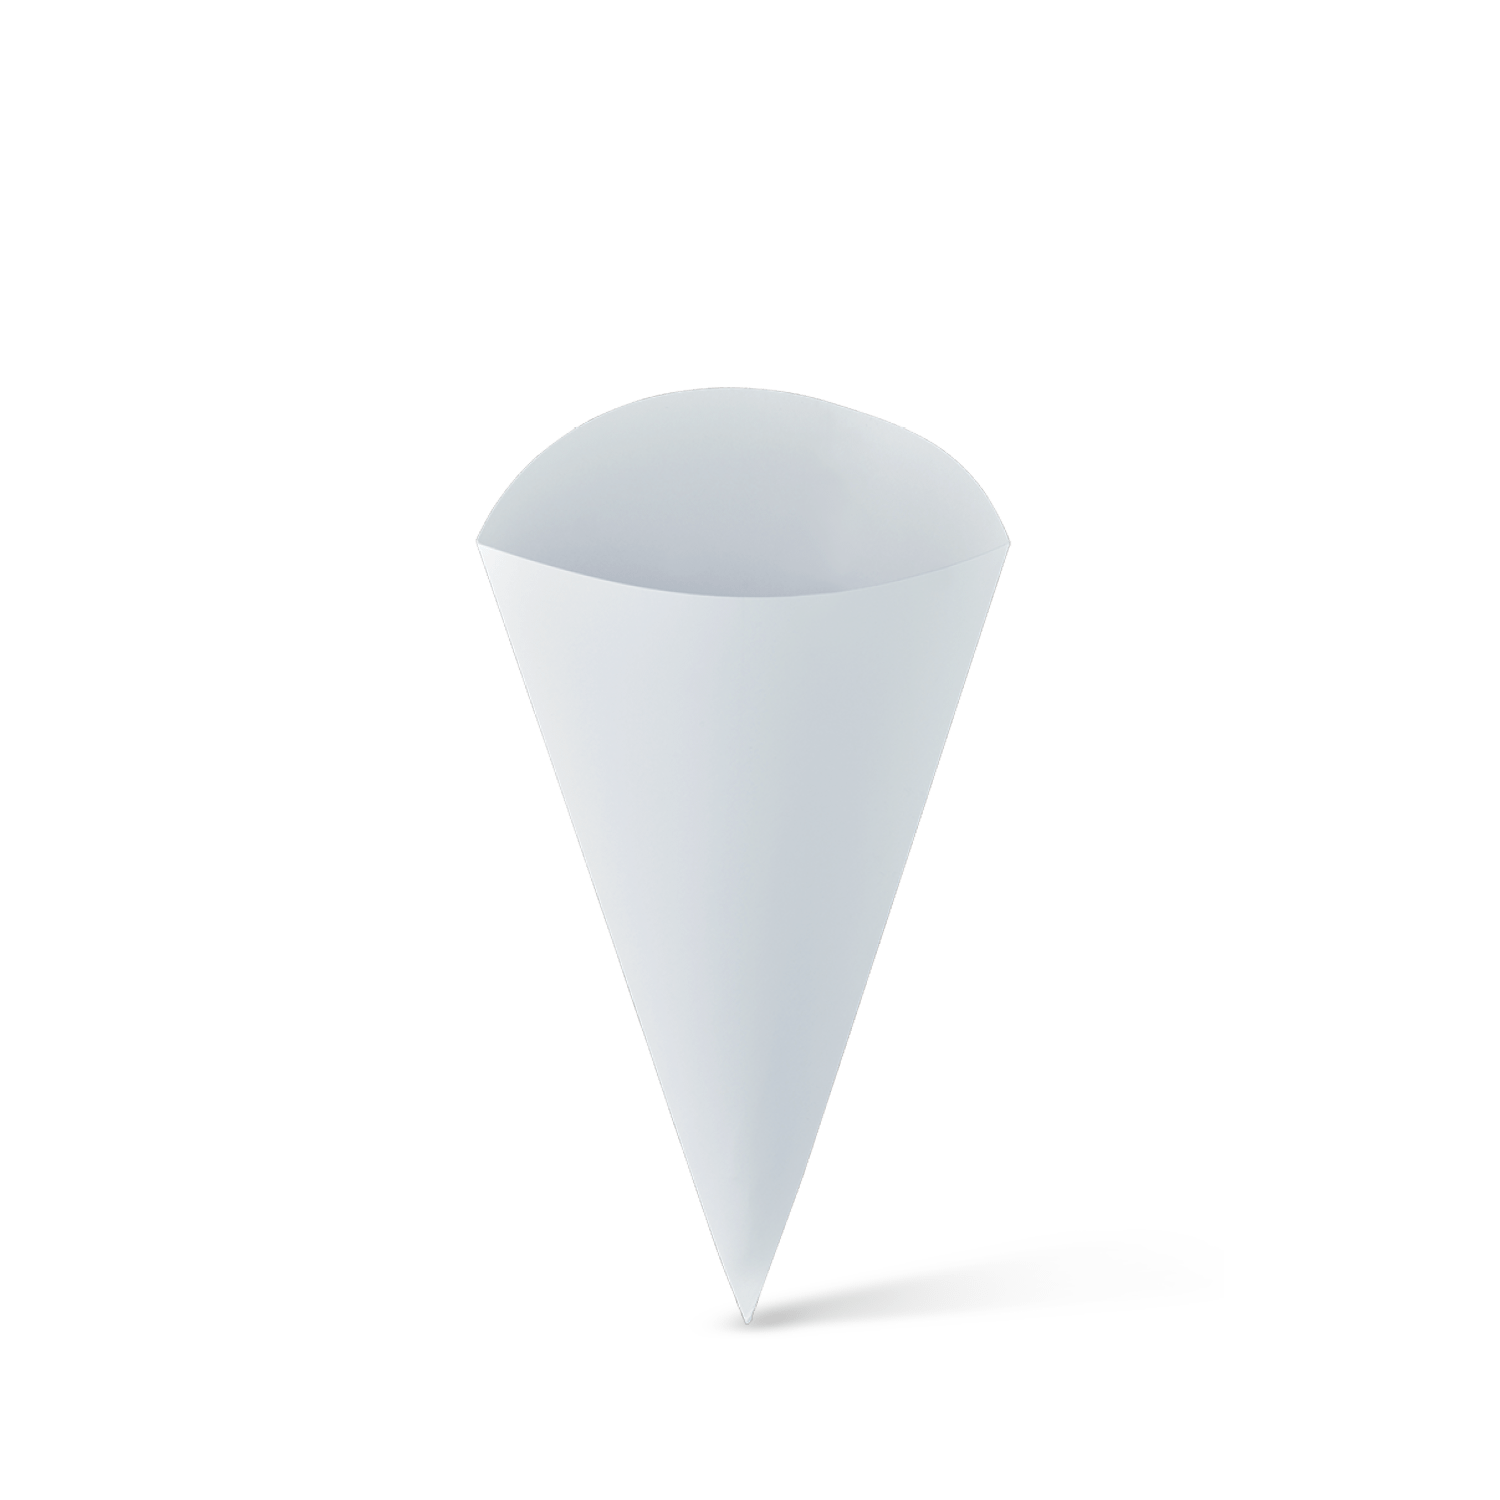 Cone Paper Hot (197mm x 150mm) Detpak Small (Carton 500)